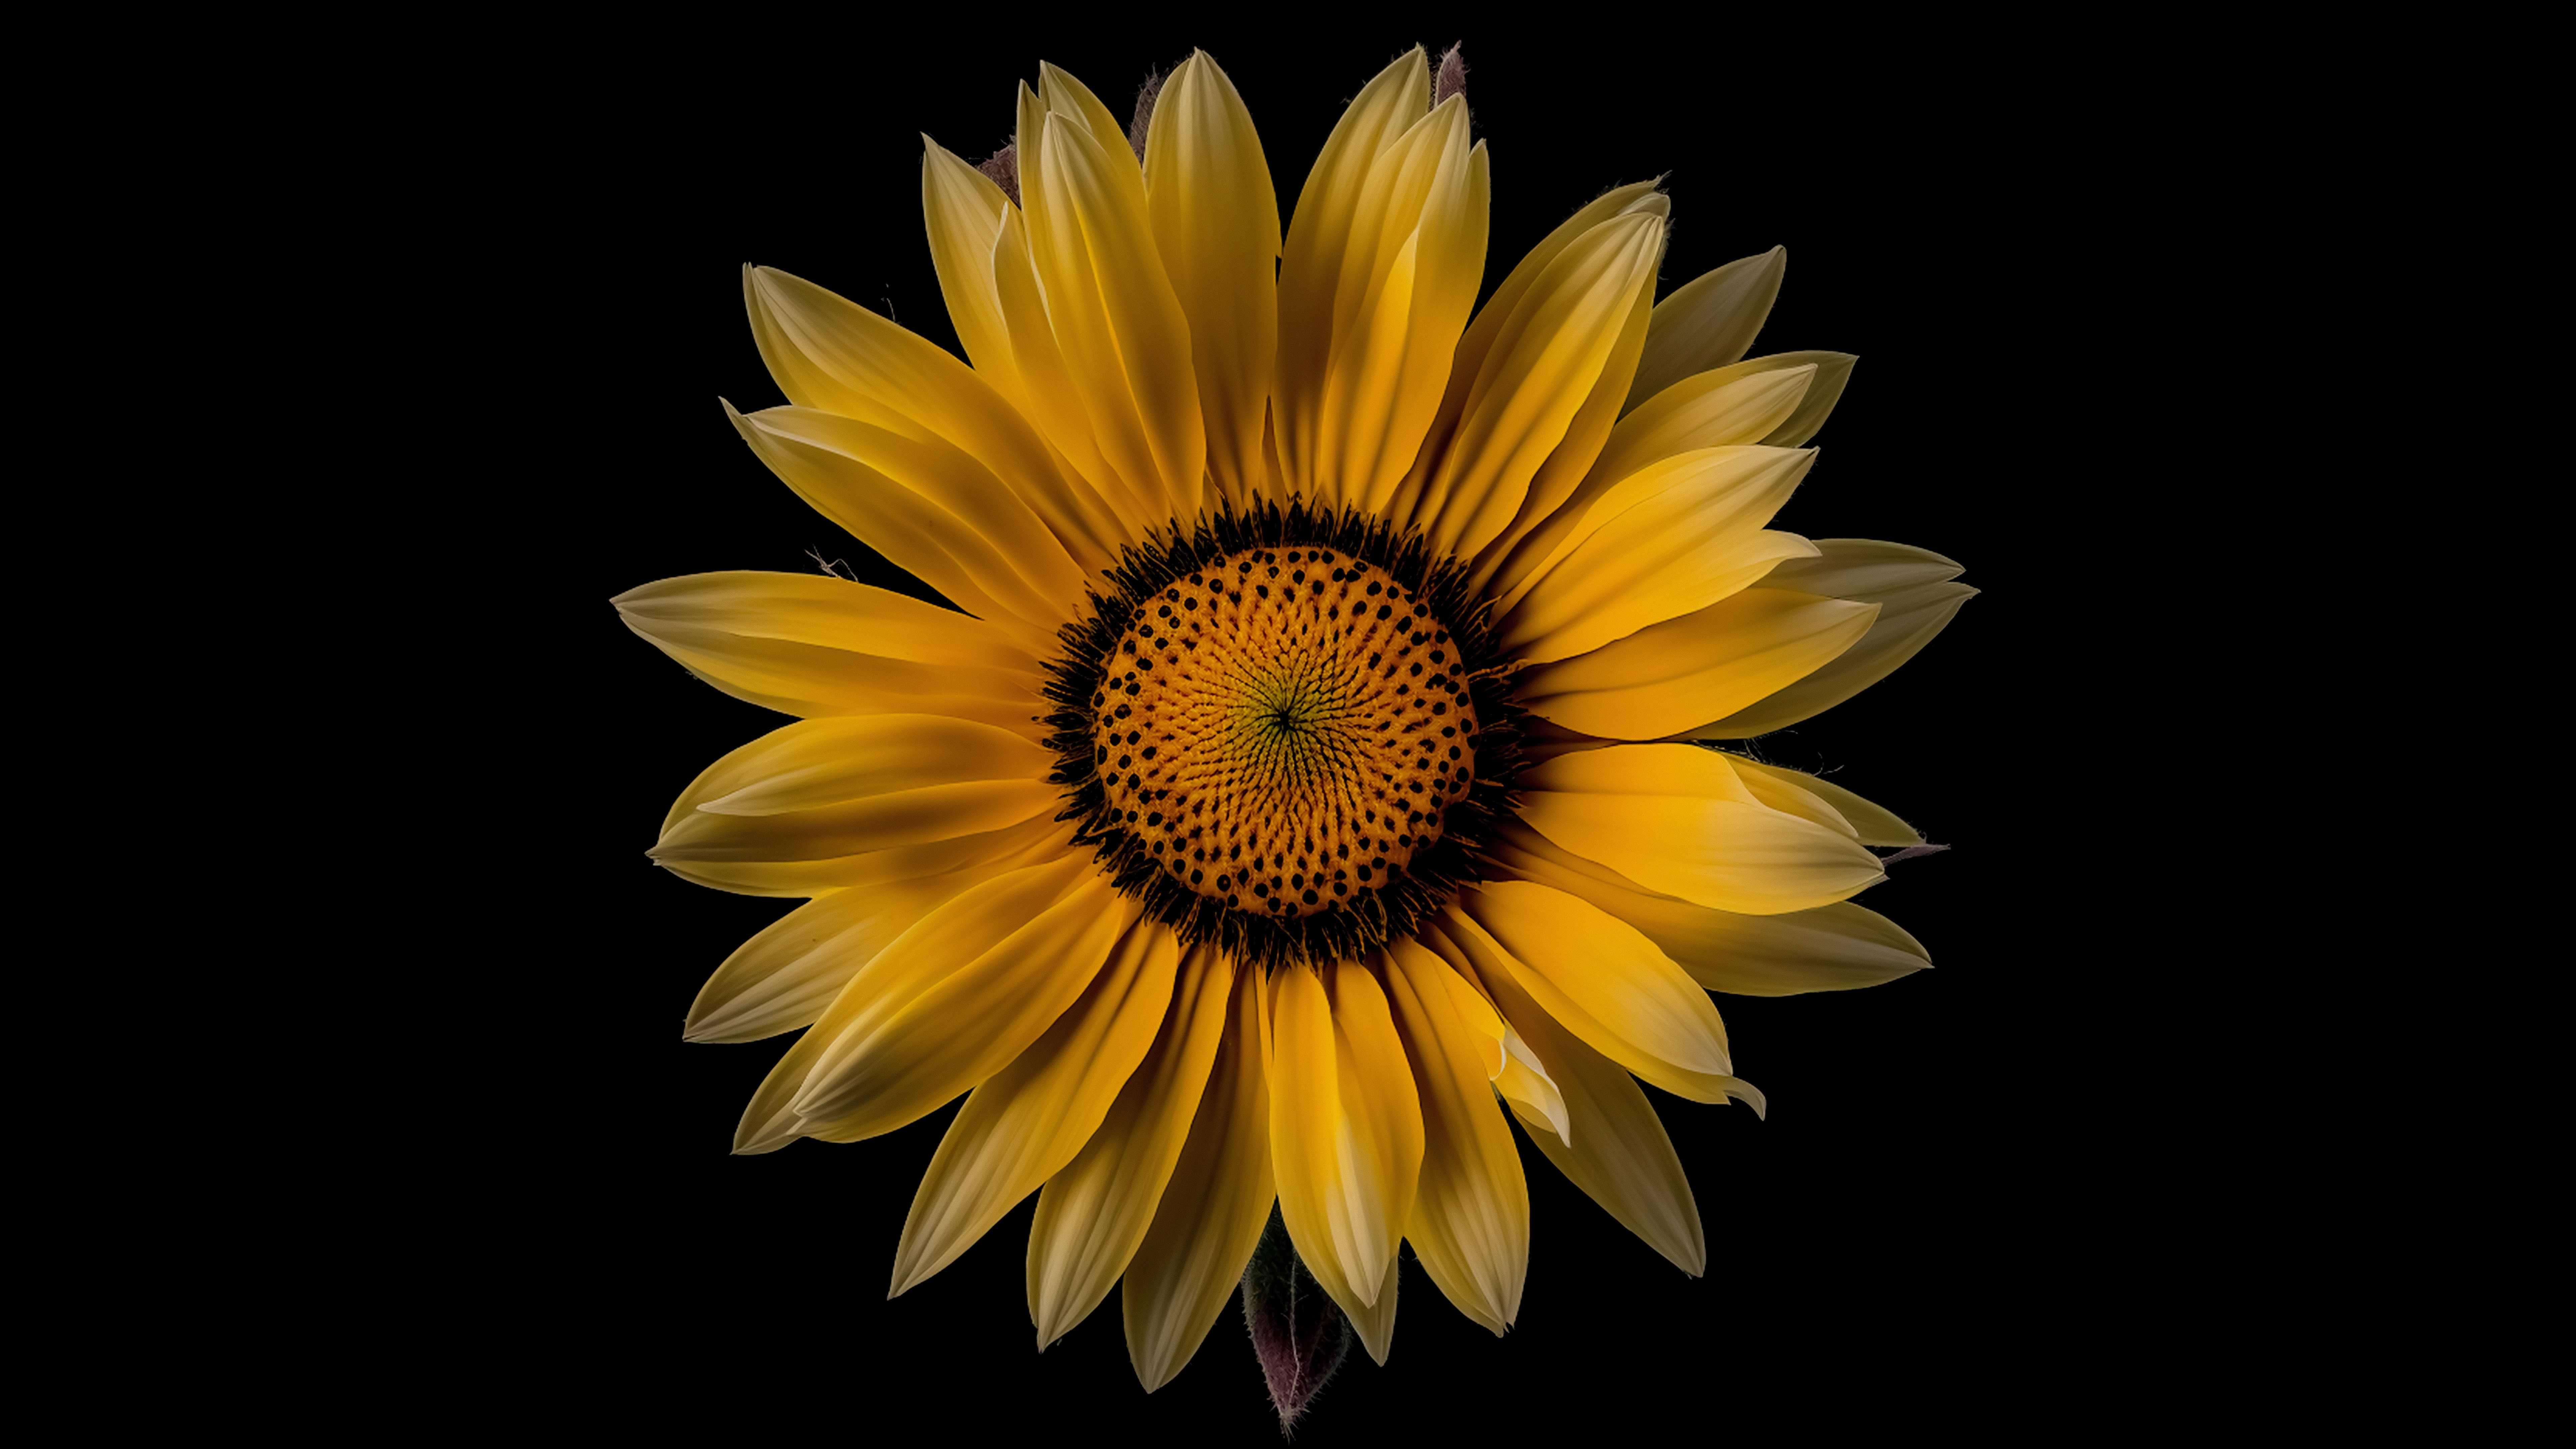 Dark Sunflower Wallpapers  Top Free Dark Sunflower Backgrounds   WallpaperAccess